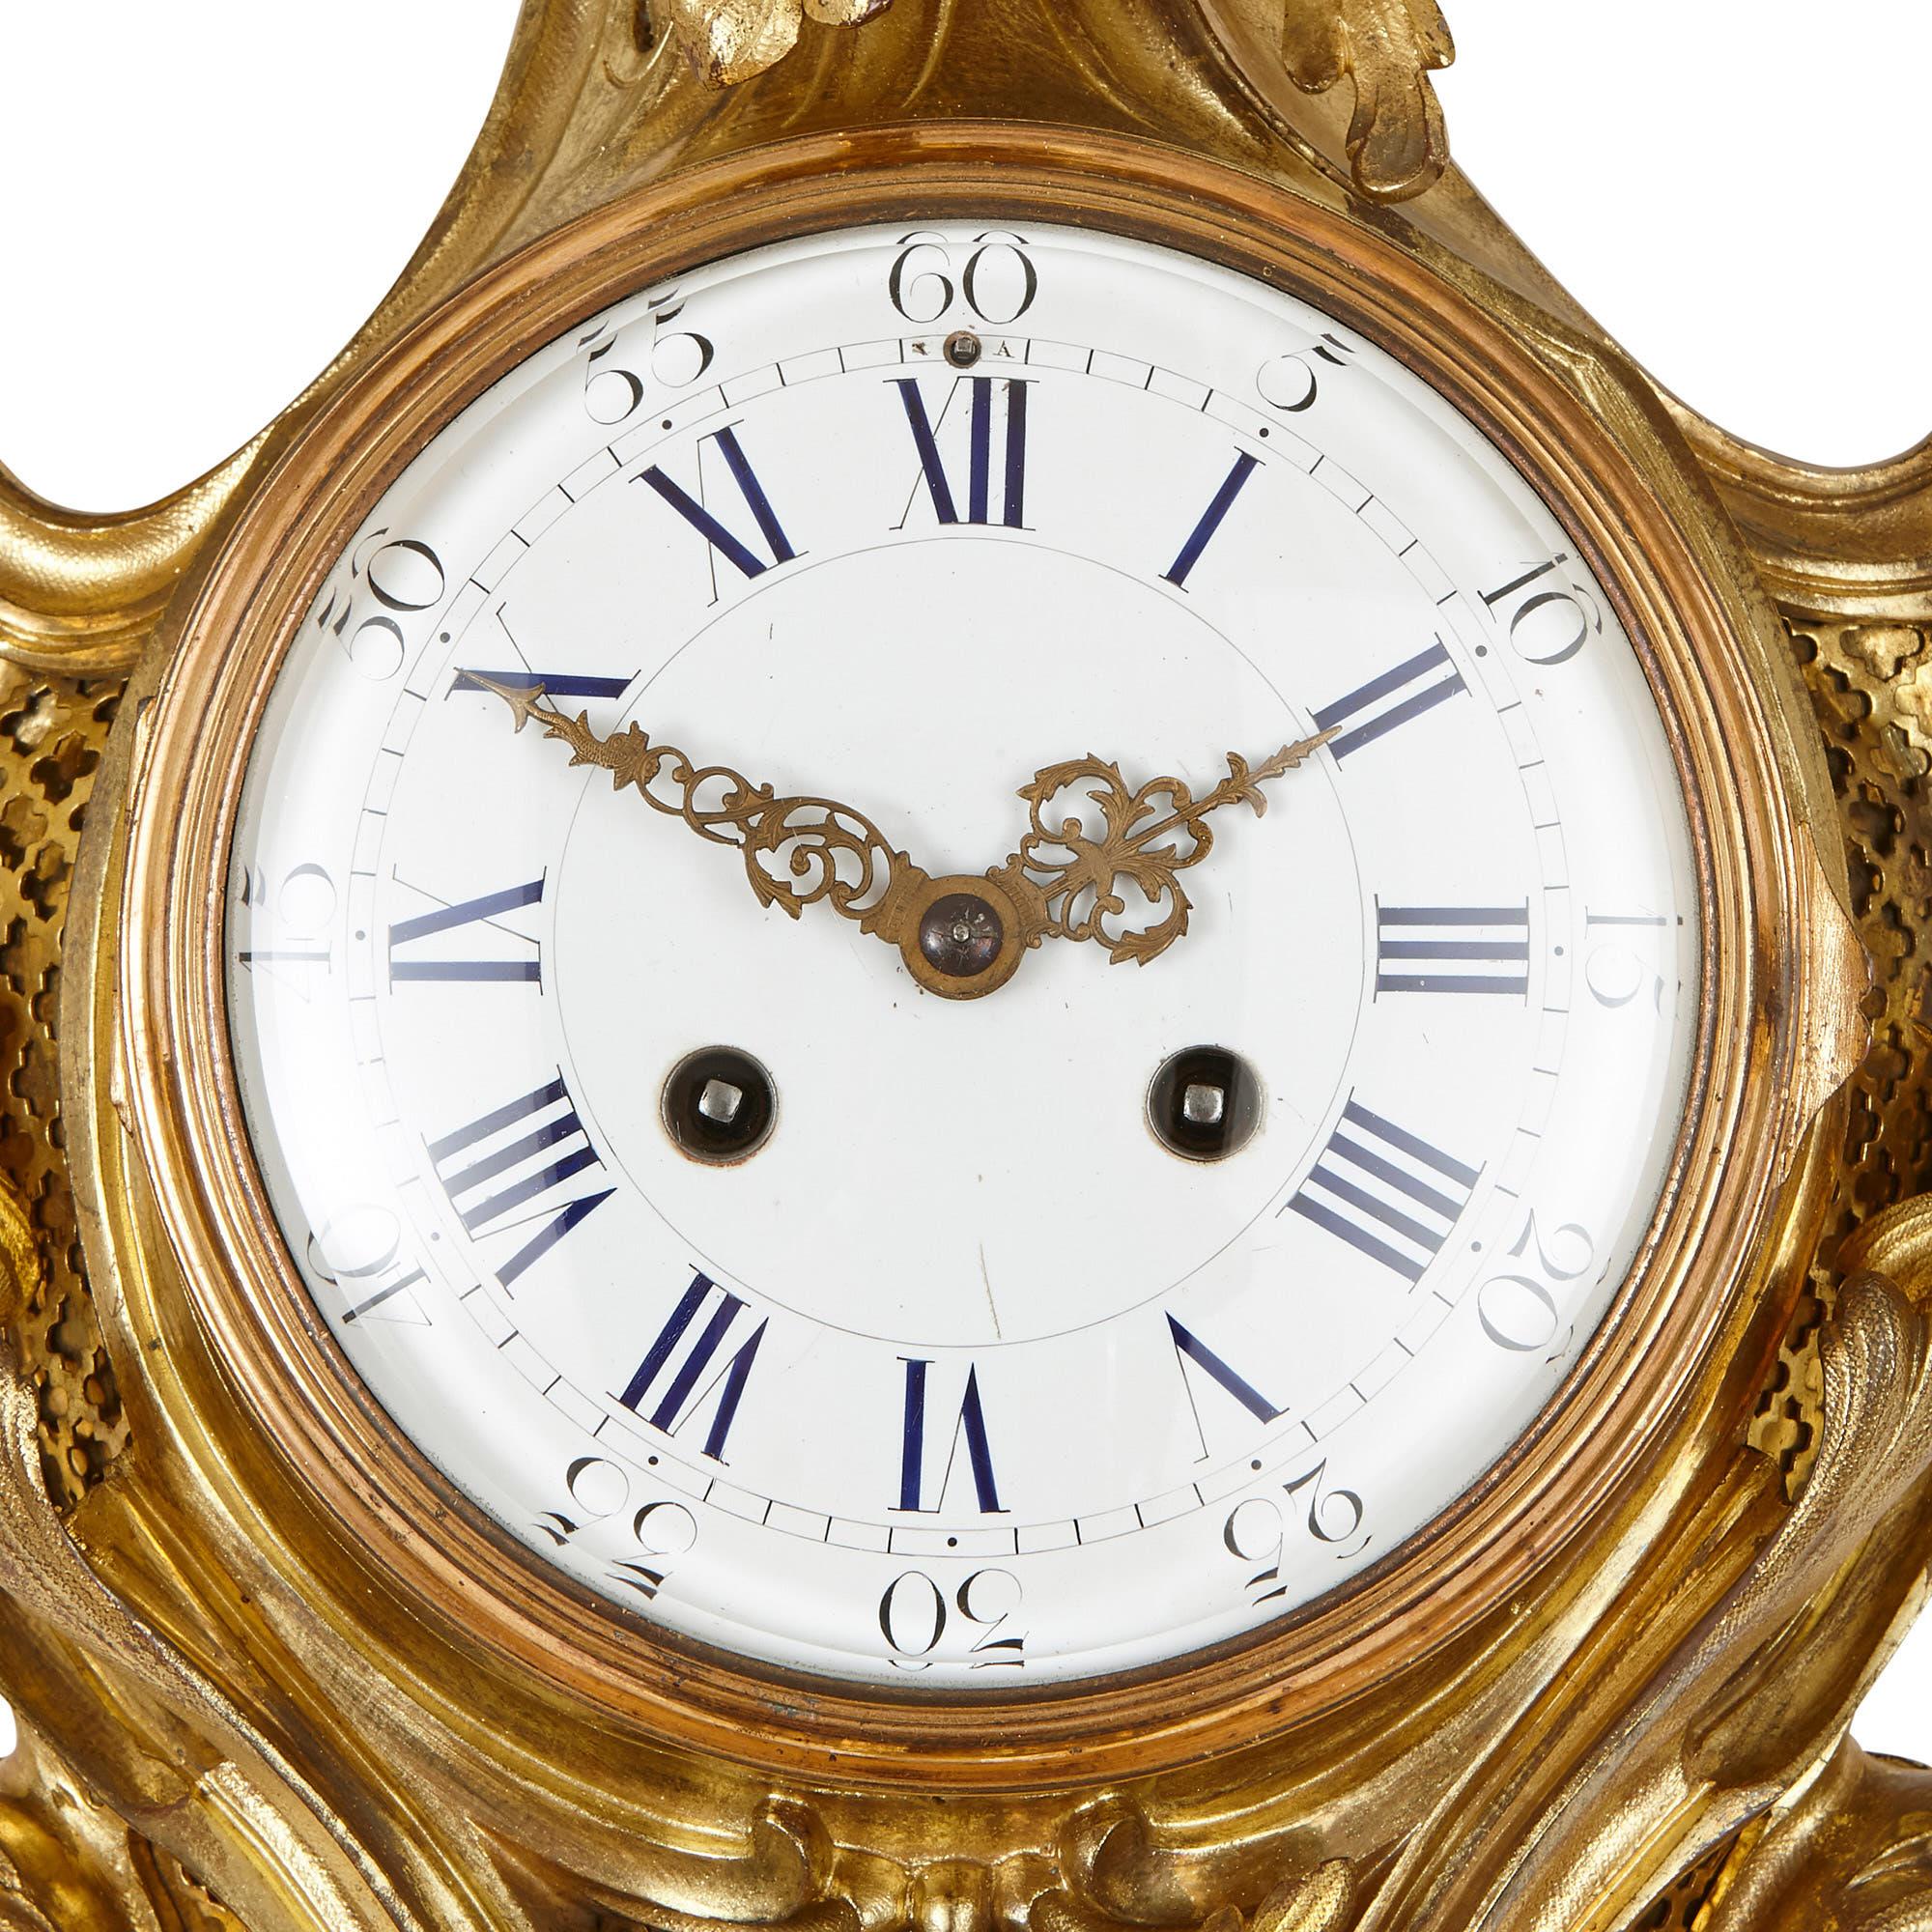 Conçu dans le style rococo français, cet ensemble horloge et baromètre a été magnifiquement orné de formes de feuillage en bronze doré. Les deux articles sont en forme de diamant, avec des boîtiers symétriques composés d'un haut et d'un bas pointus